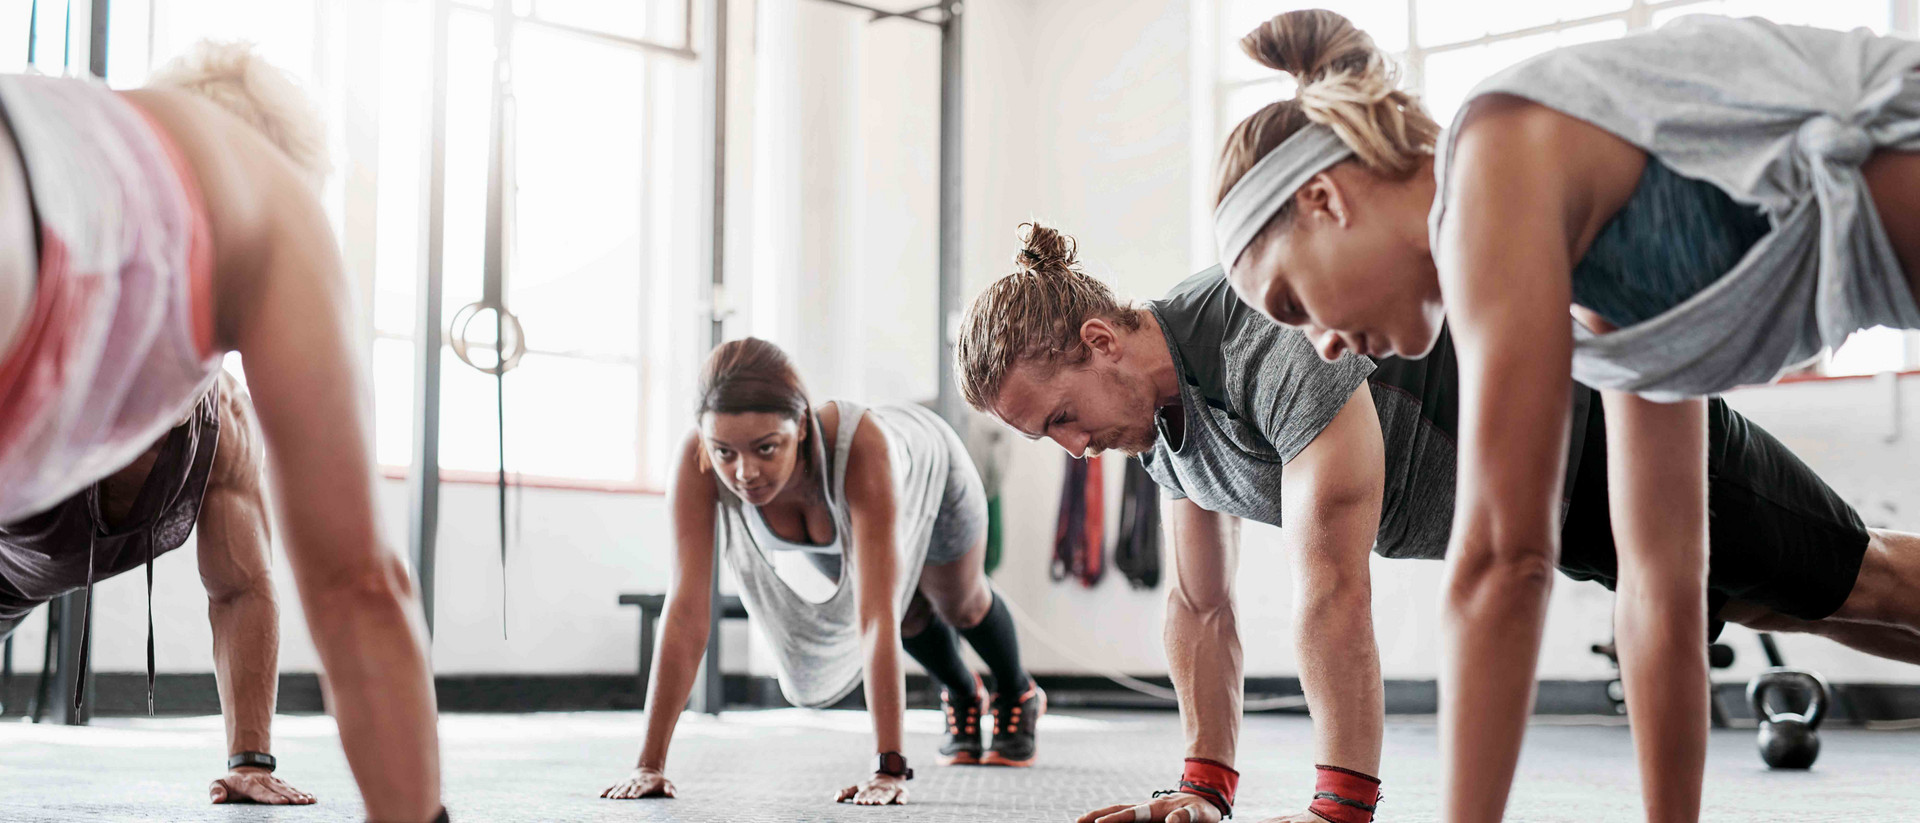 Fünf sportliche Menschen trainieren in einem hellen Studio mit ihrem eigenen Körpergewicht.